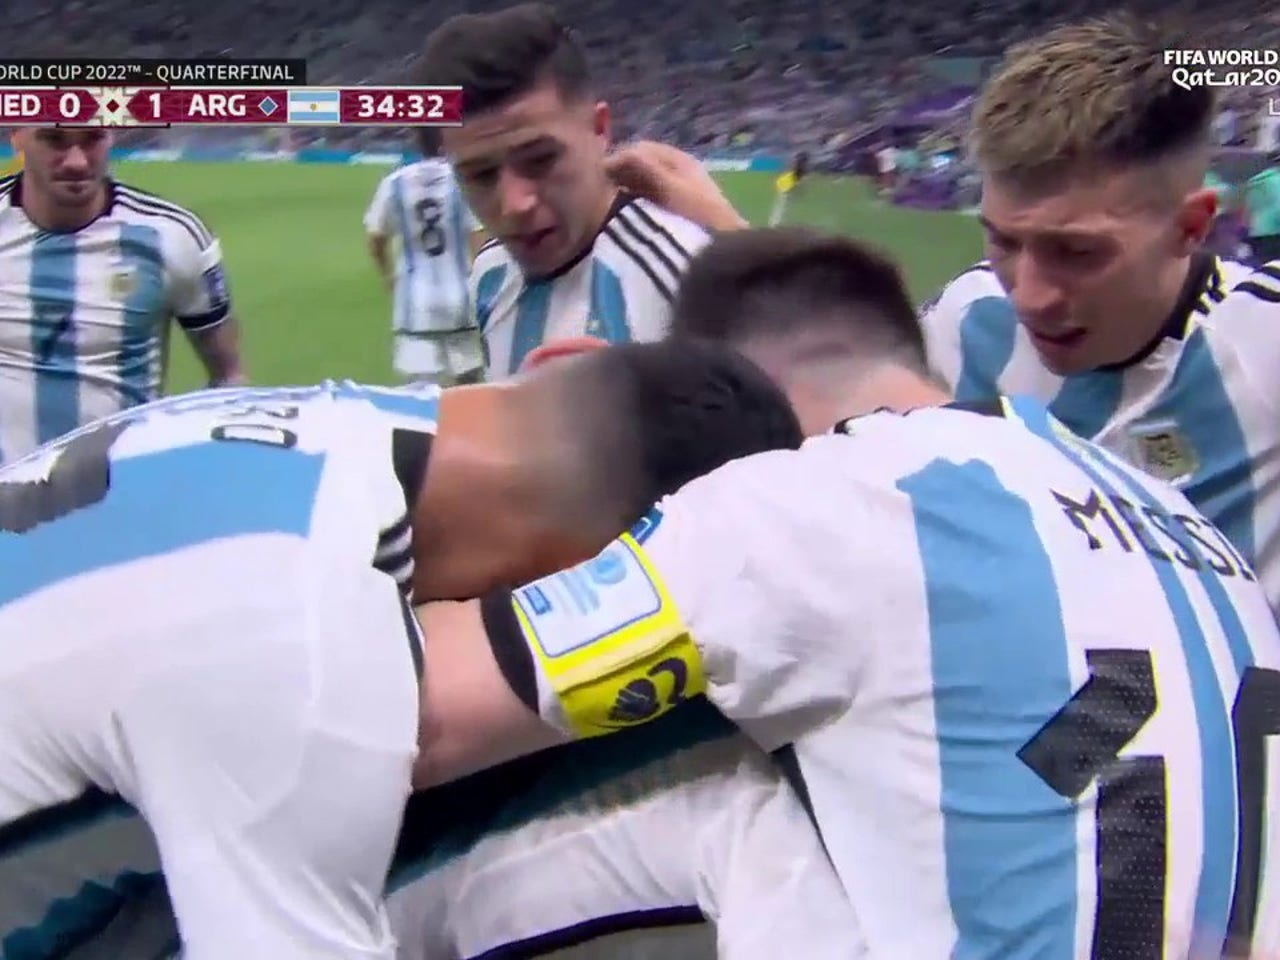 Argentinas Nahuel Molina scores goal vs